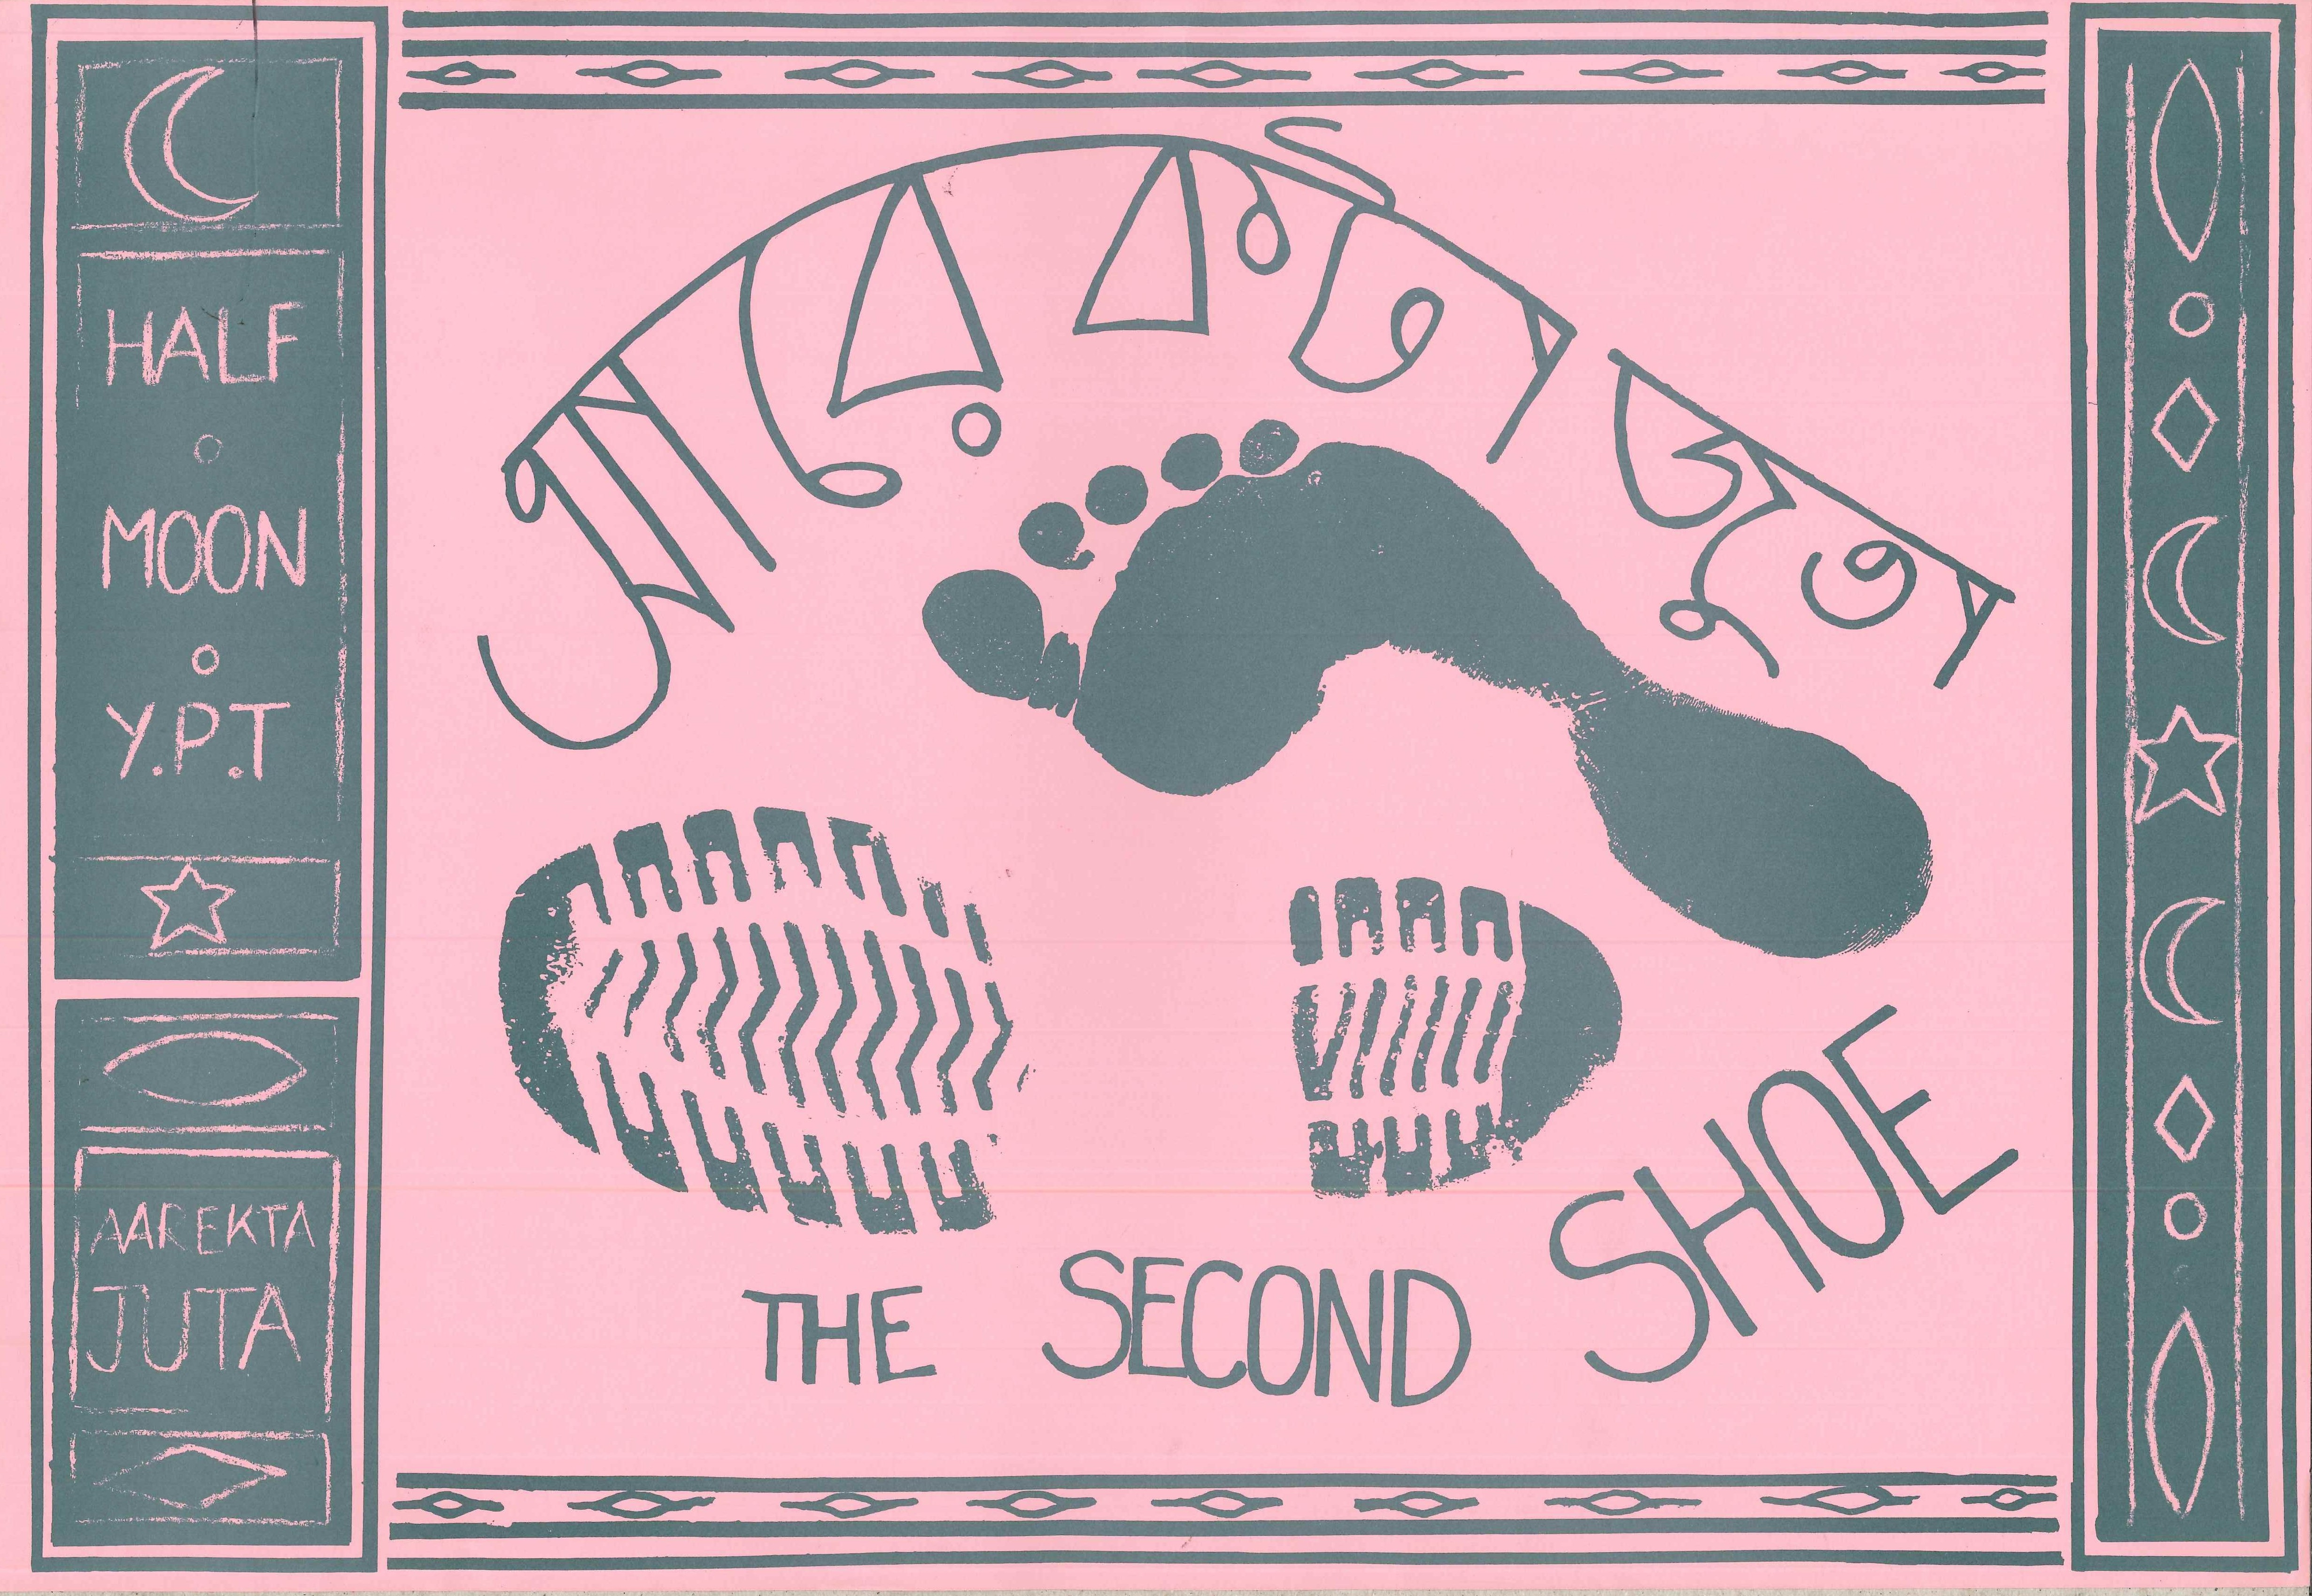 Aarekta Juta - The Second Shoe, Poster